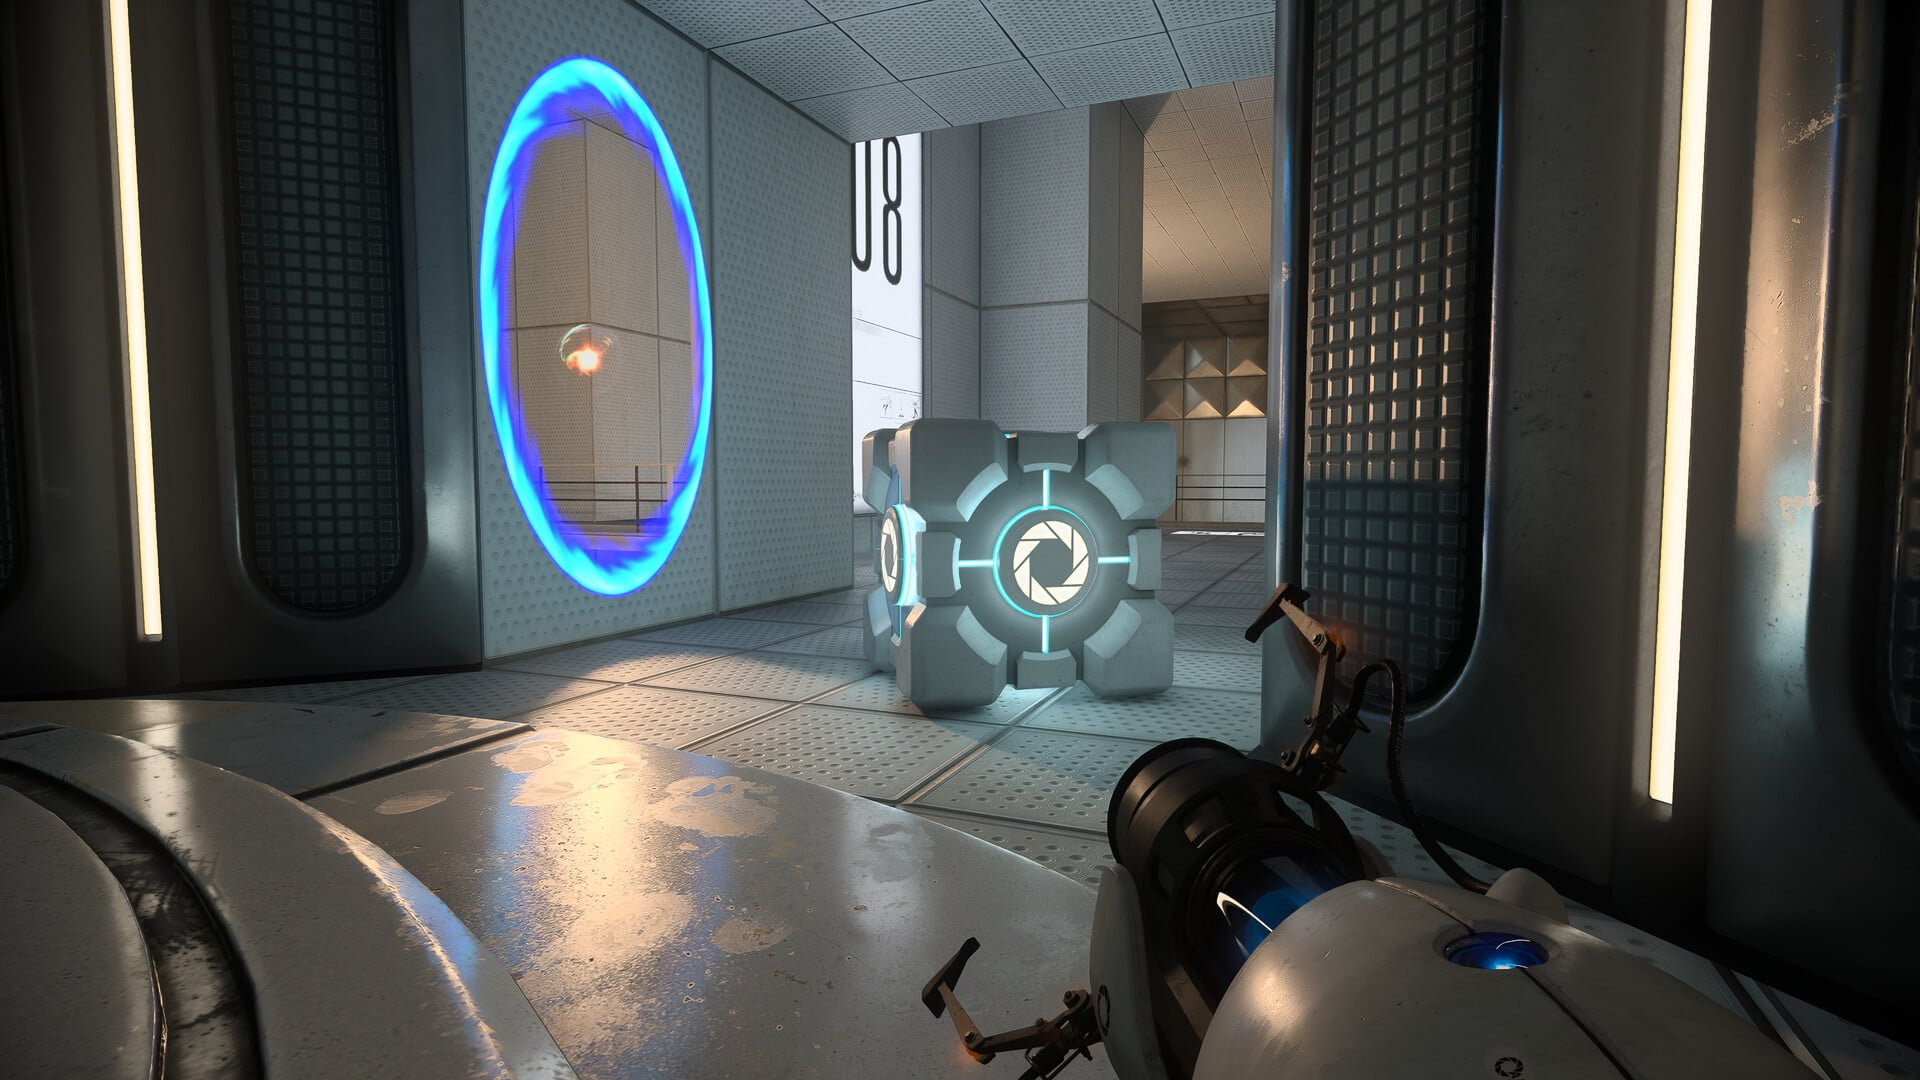 Wnętrze futurystycznego laboratorium z portalem na ścianie i przyrządem do tworzenia portali w pierwszym planie, obok sześciennej zagadki umieszczonej na podłodze.